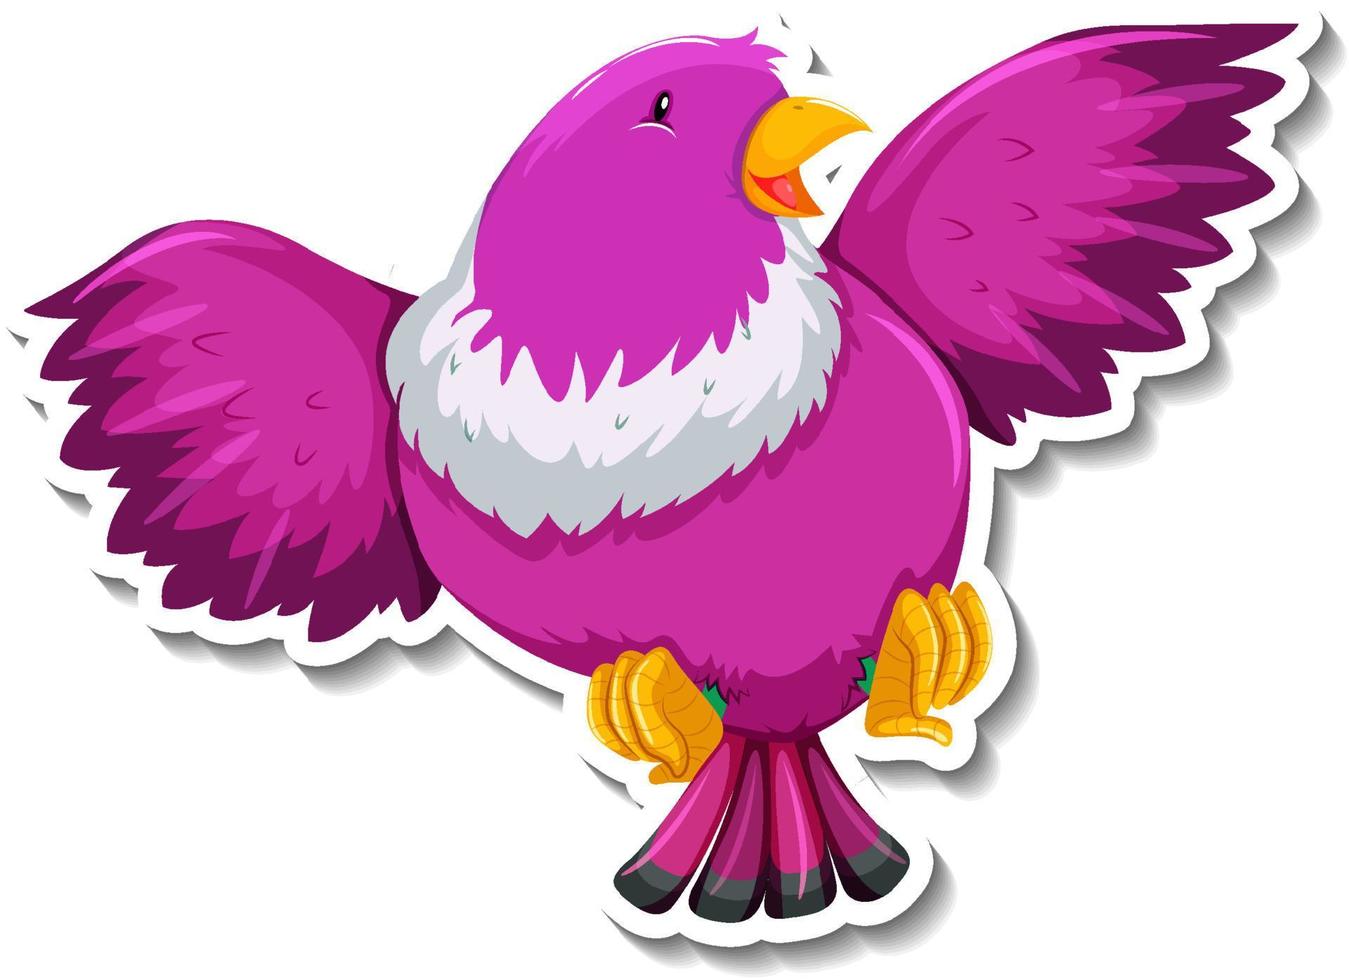 etiqueta engomada linda de la historieta del animal del pájaro rosado vector